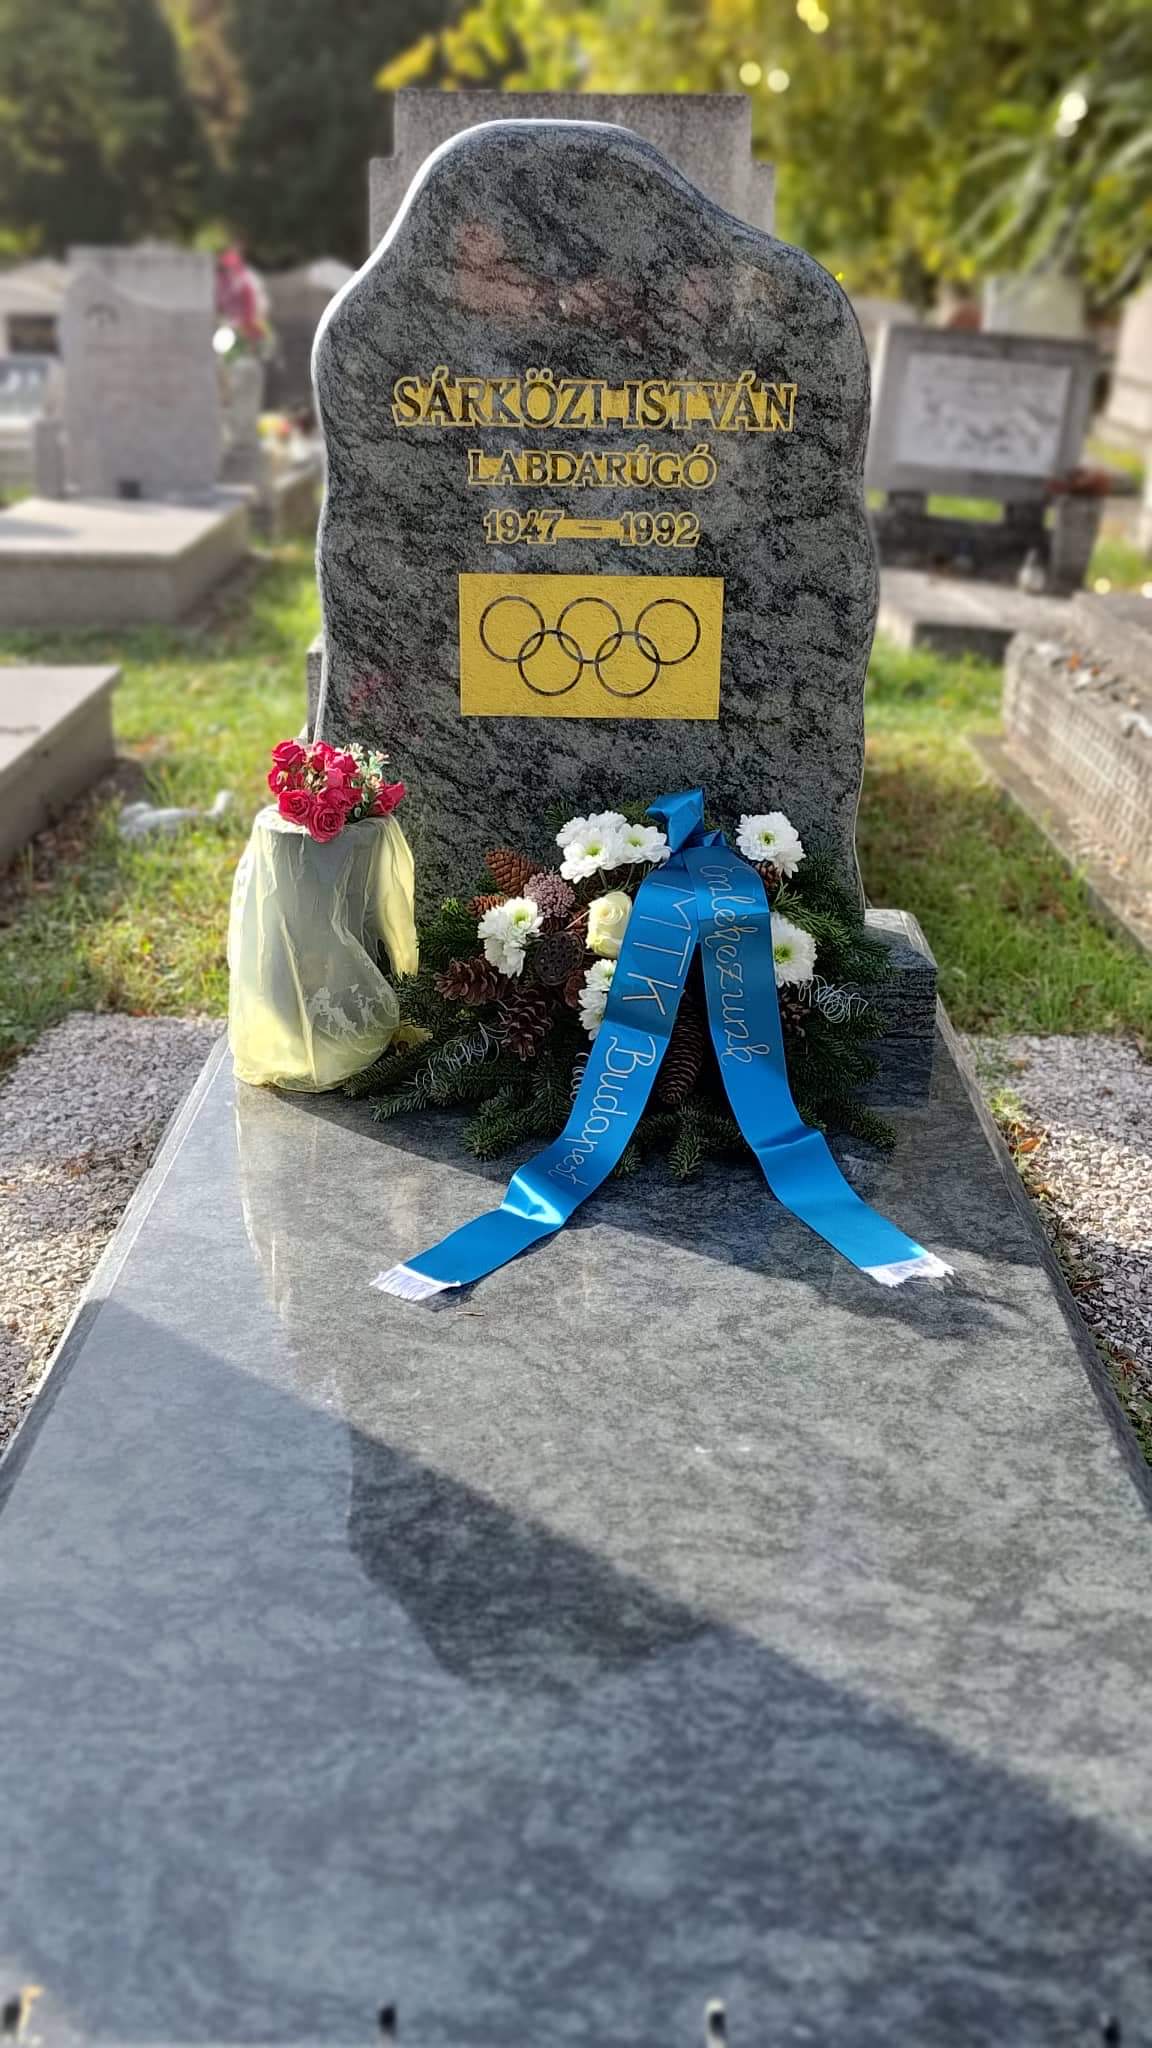 75 éve született Sárközi István, a tragikus sorsú olimpiai bajnok futballista